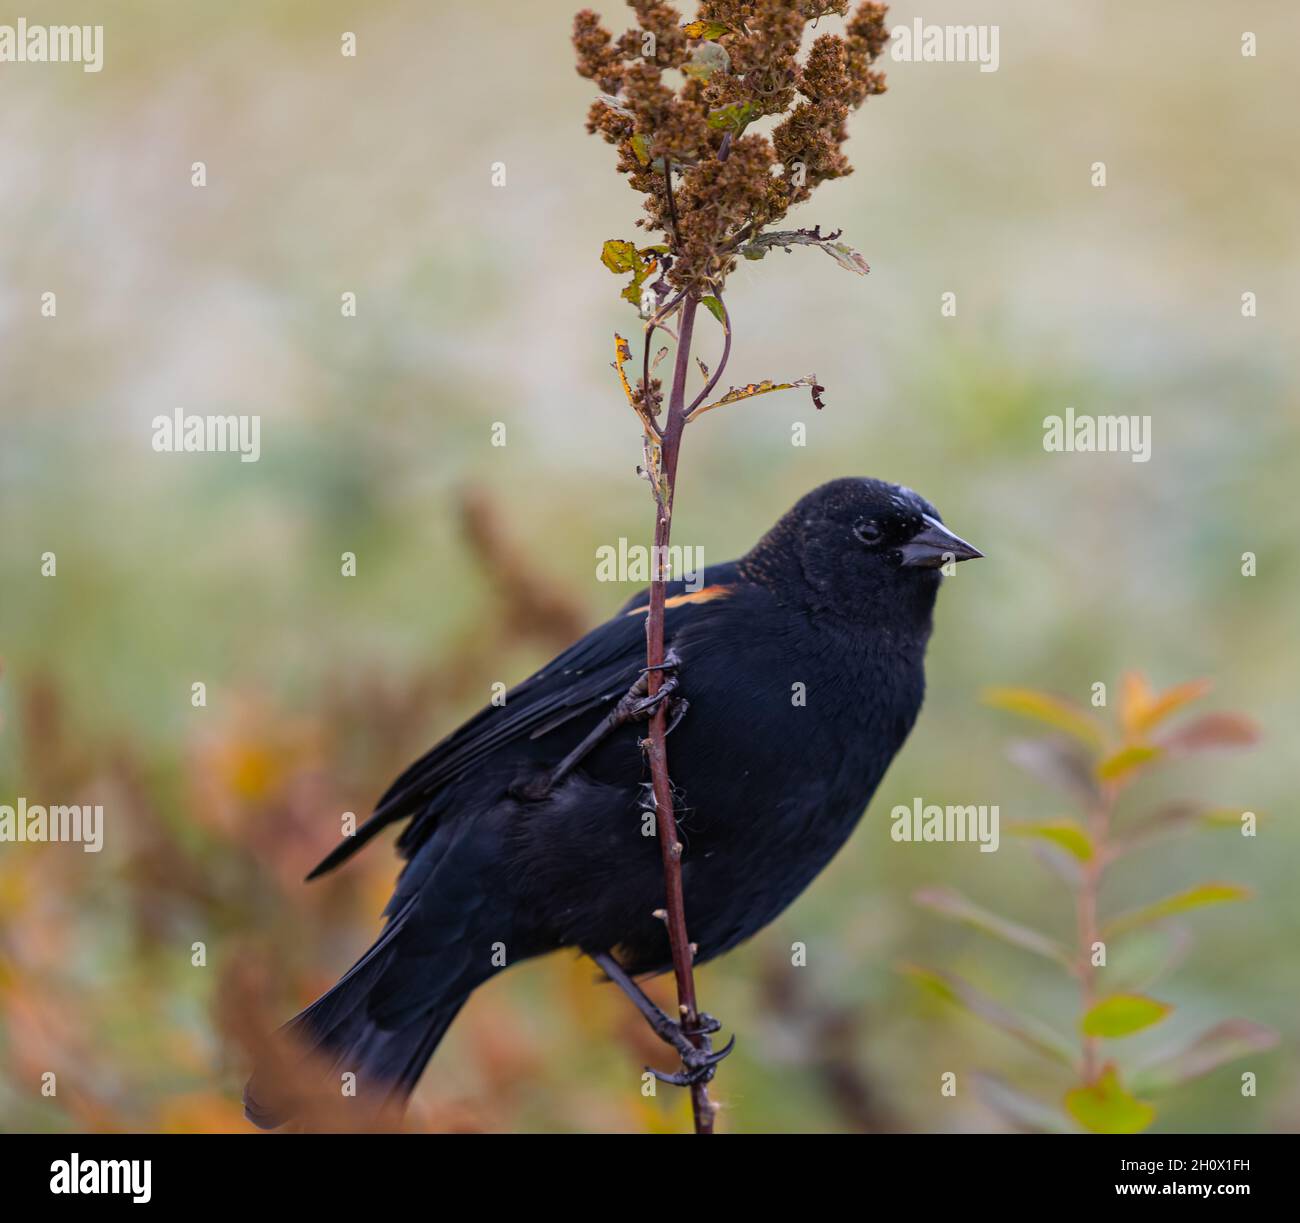 blackbird à ailes rouges est situé sur la branche d'une usine.Saison d'automne.Vue sur la rue, photo de voyage, photo de concept ornithologie Banque D'Images